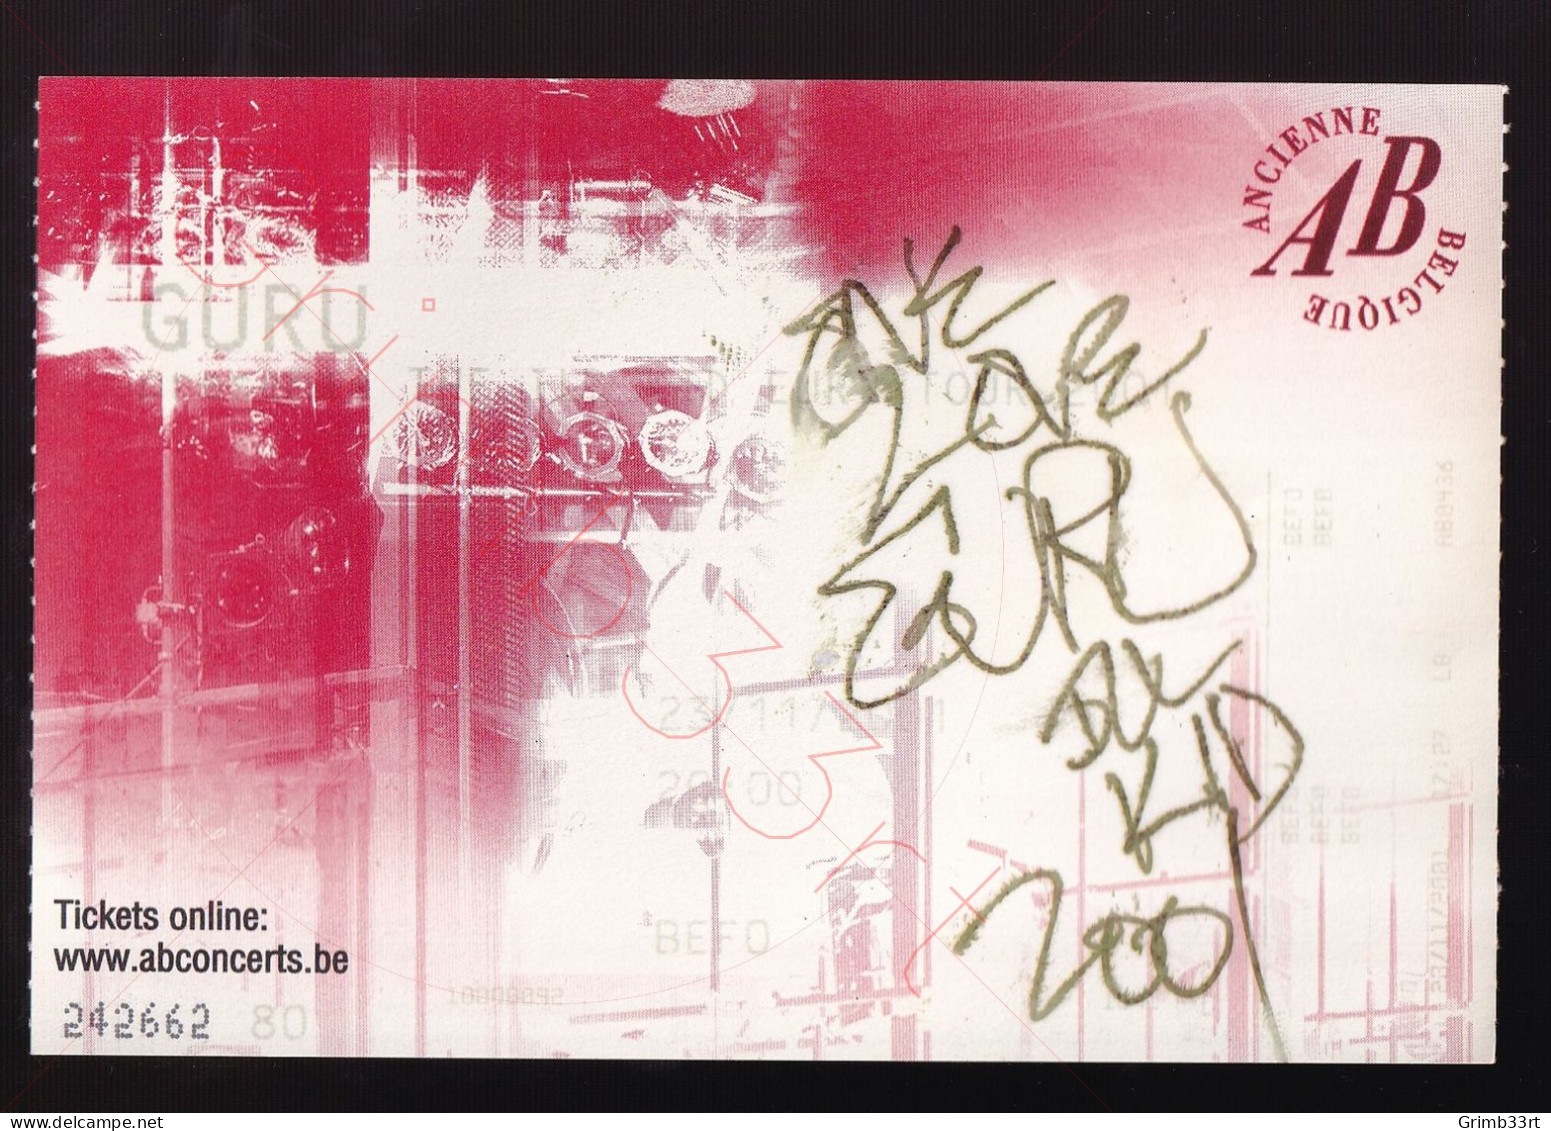 Guru (GESIGNEERD!) - The Ill Kid Tour - 23 November 2001 - Ancienne Belgique (BE) - Concert Ticket - Concert Tickets